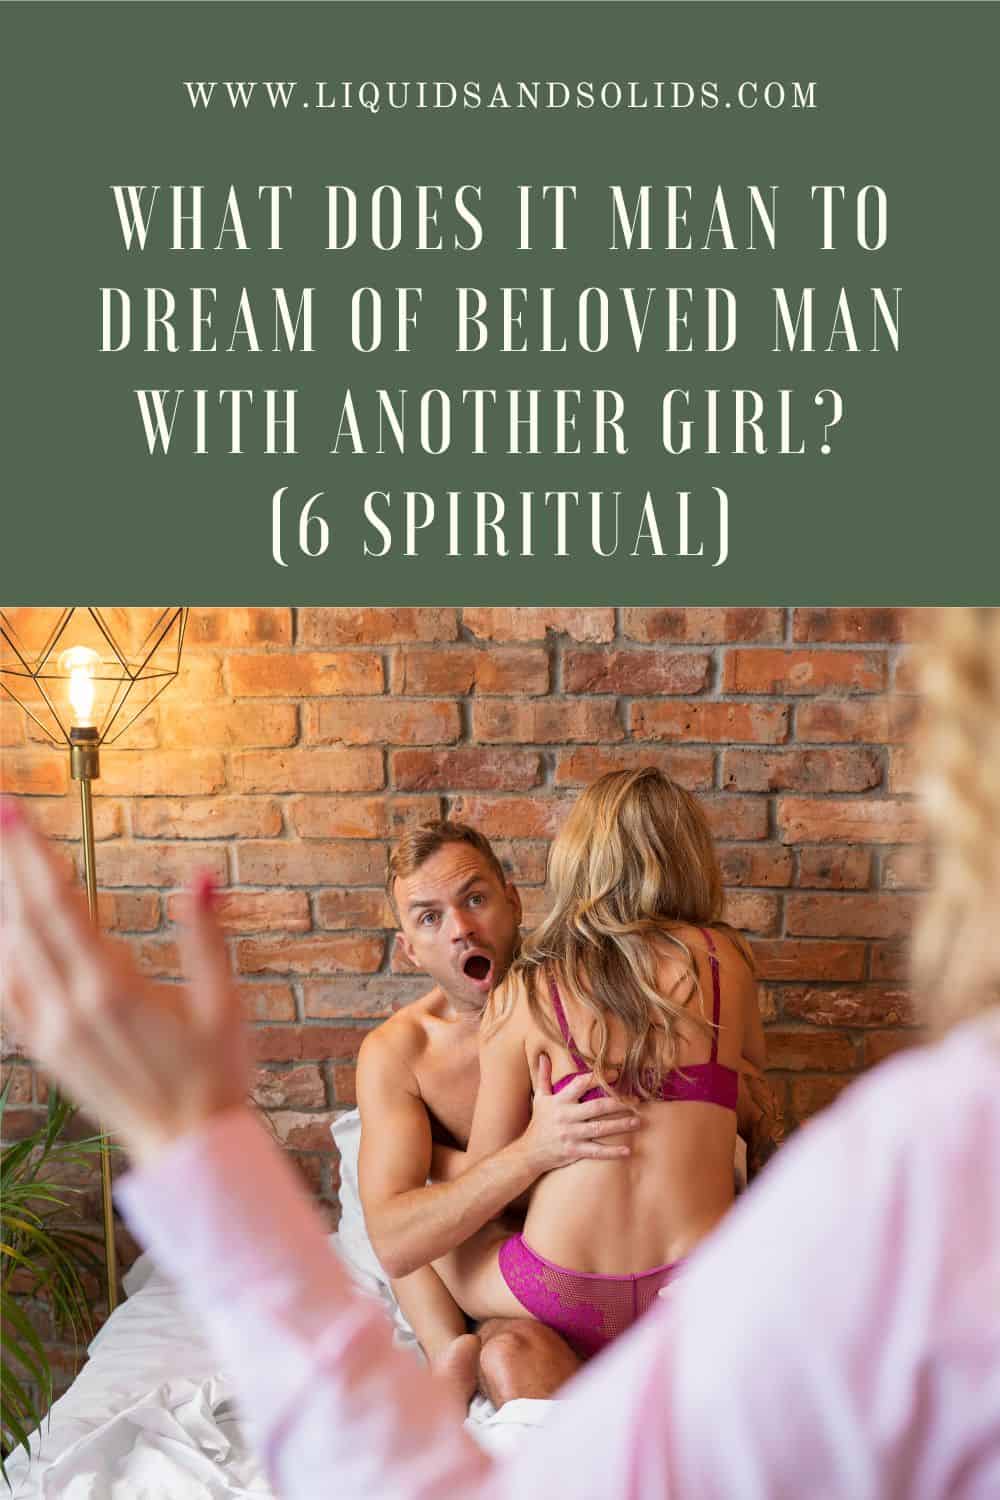  Fiú egy másik lánnyal álmodik? (6 spirituális jelentés)